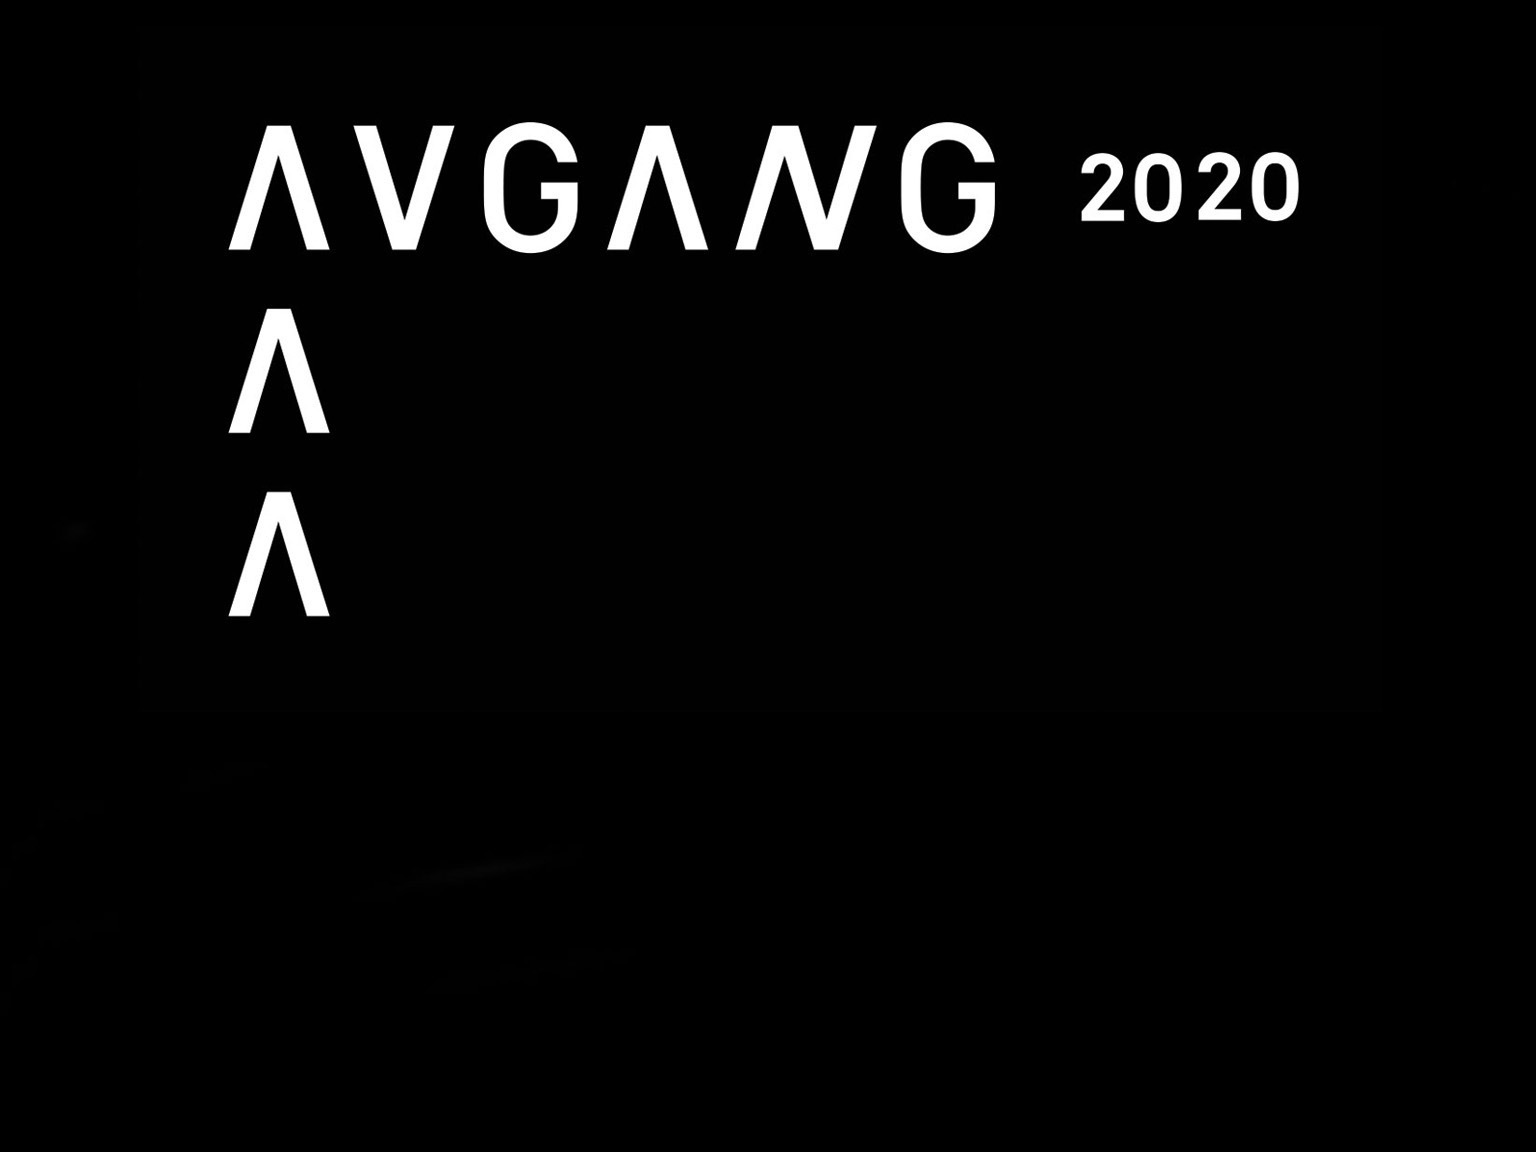 Avgang 2020